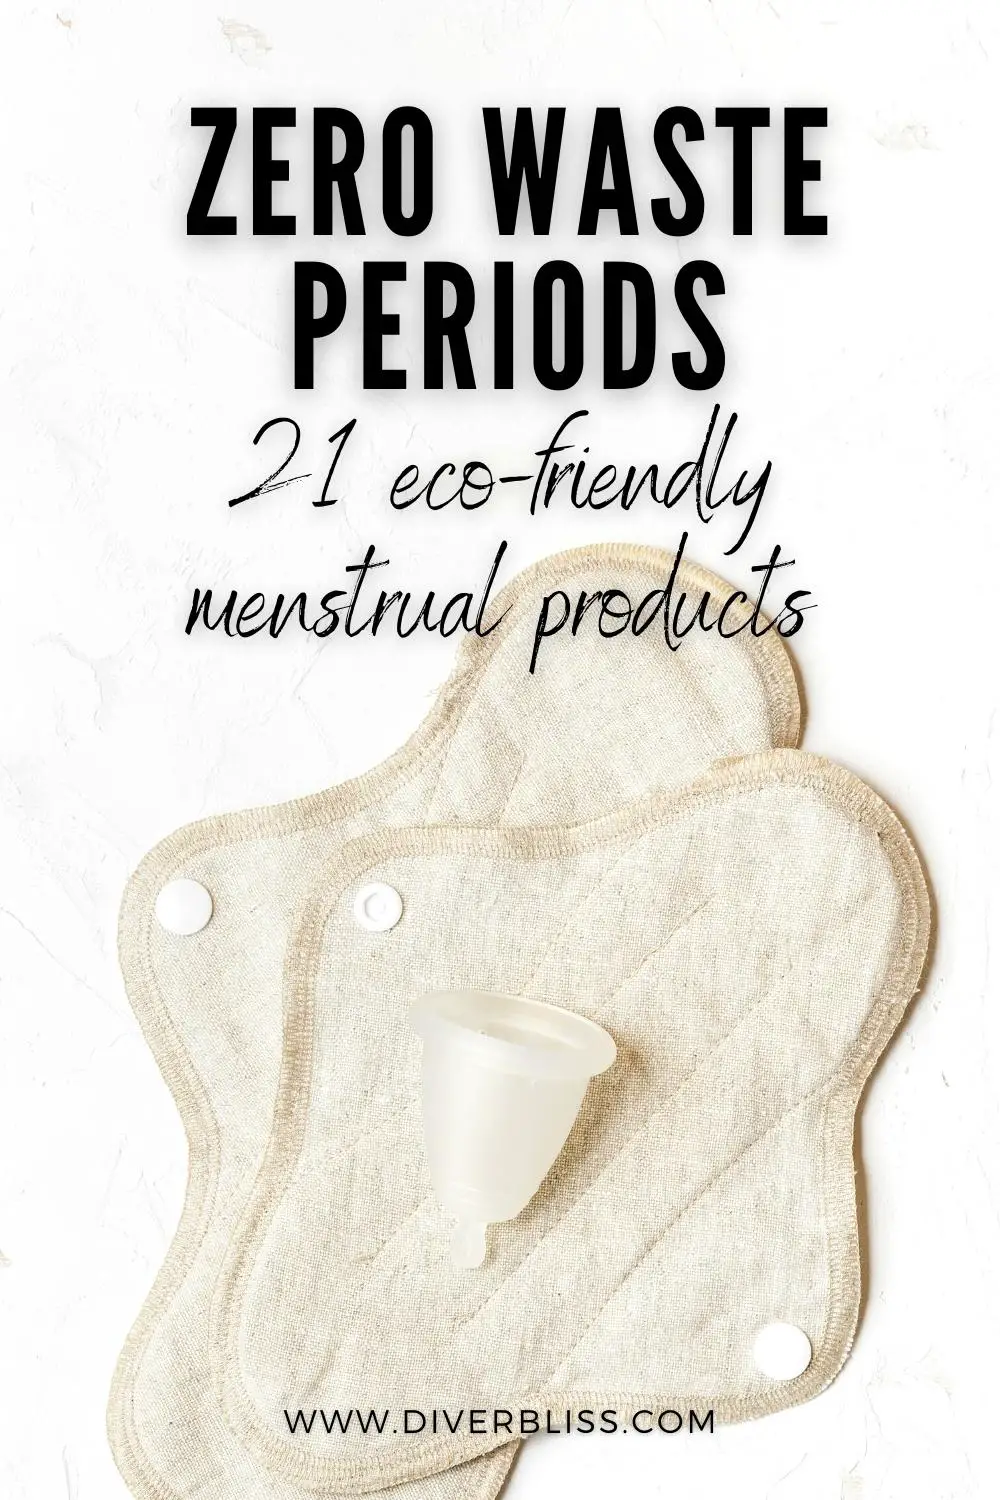 wasserdichte TPU-Schicht # 1 Wiederverwendbare Hygienetuchservietten Feminine Day oder Night Use Pad Menstruationsblöcke mit organischer Baumwolle und Bambusfaserfutter